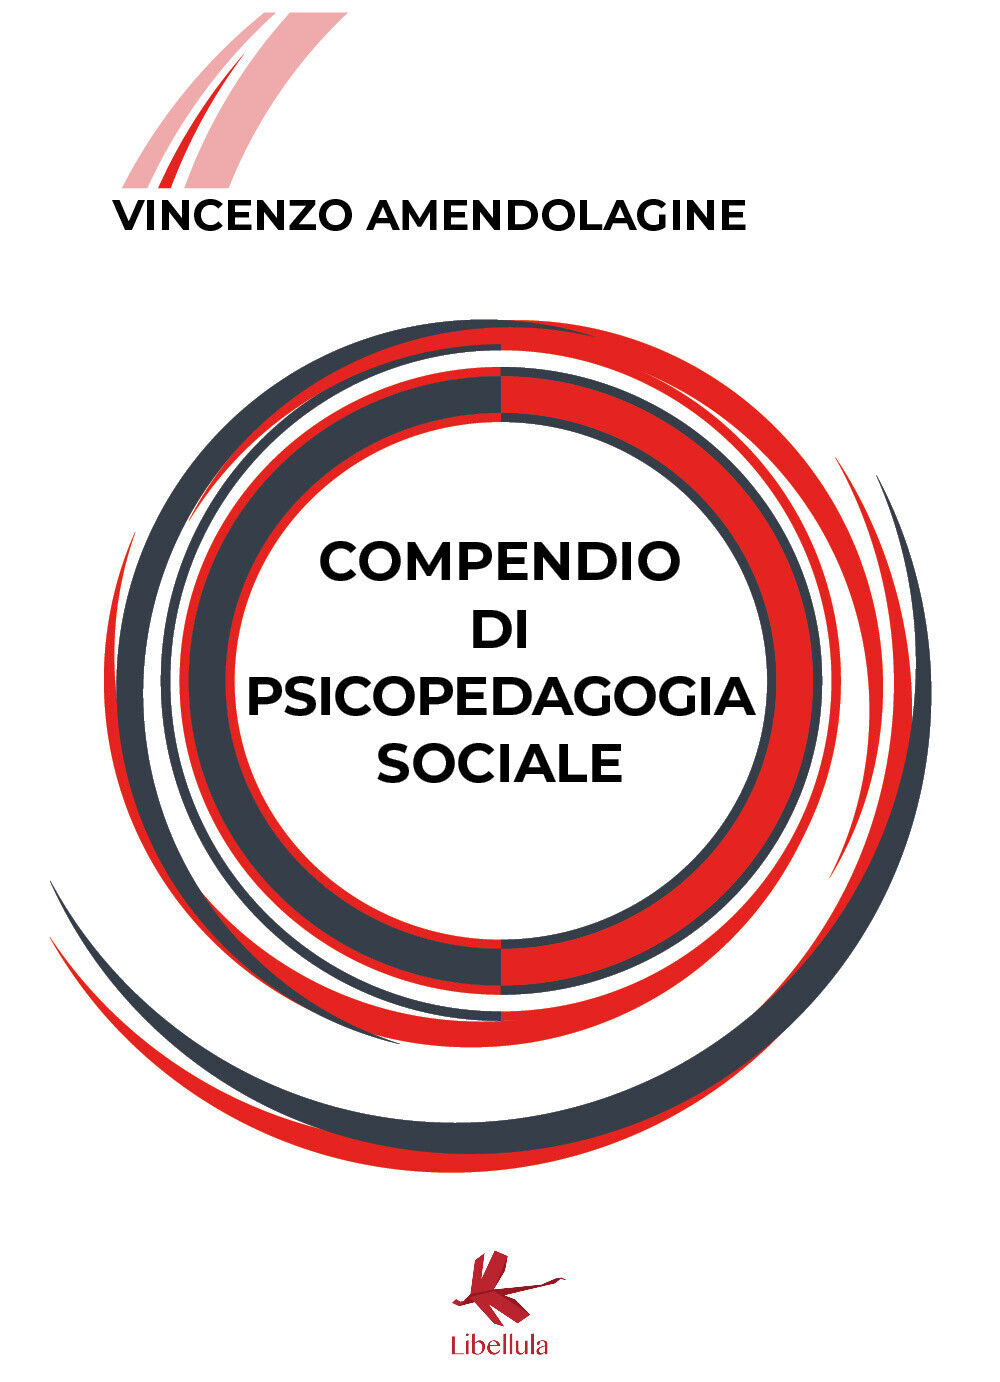 Compendio di psicopedagogia sociale di Vincenzo Amendolagine,  2018,  Youcanprin